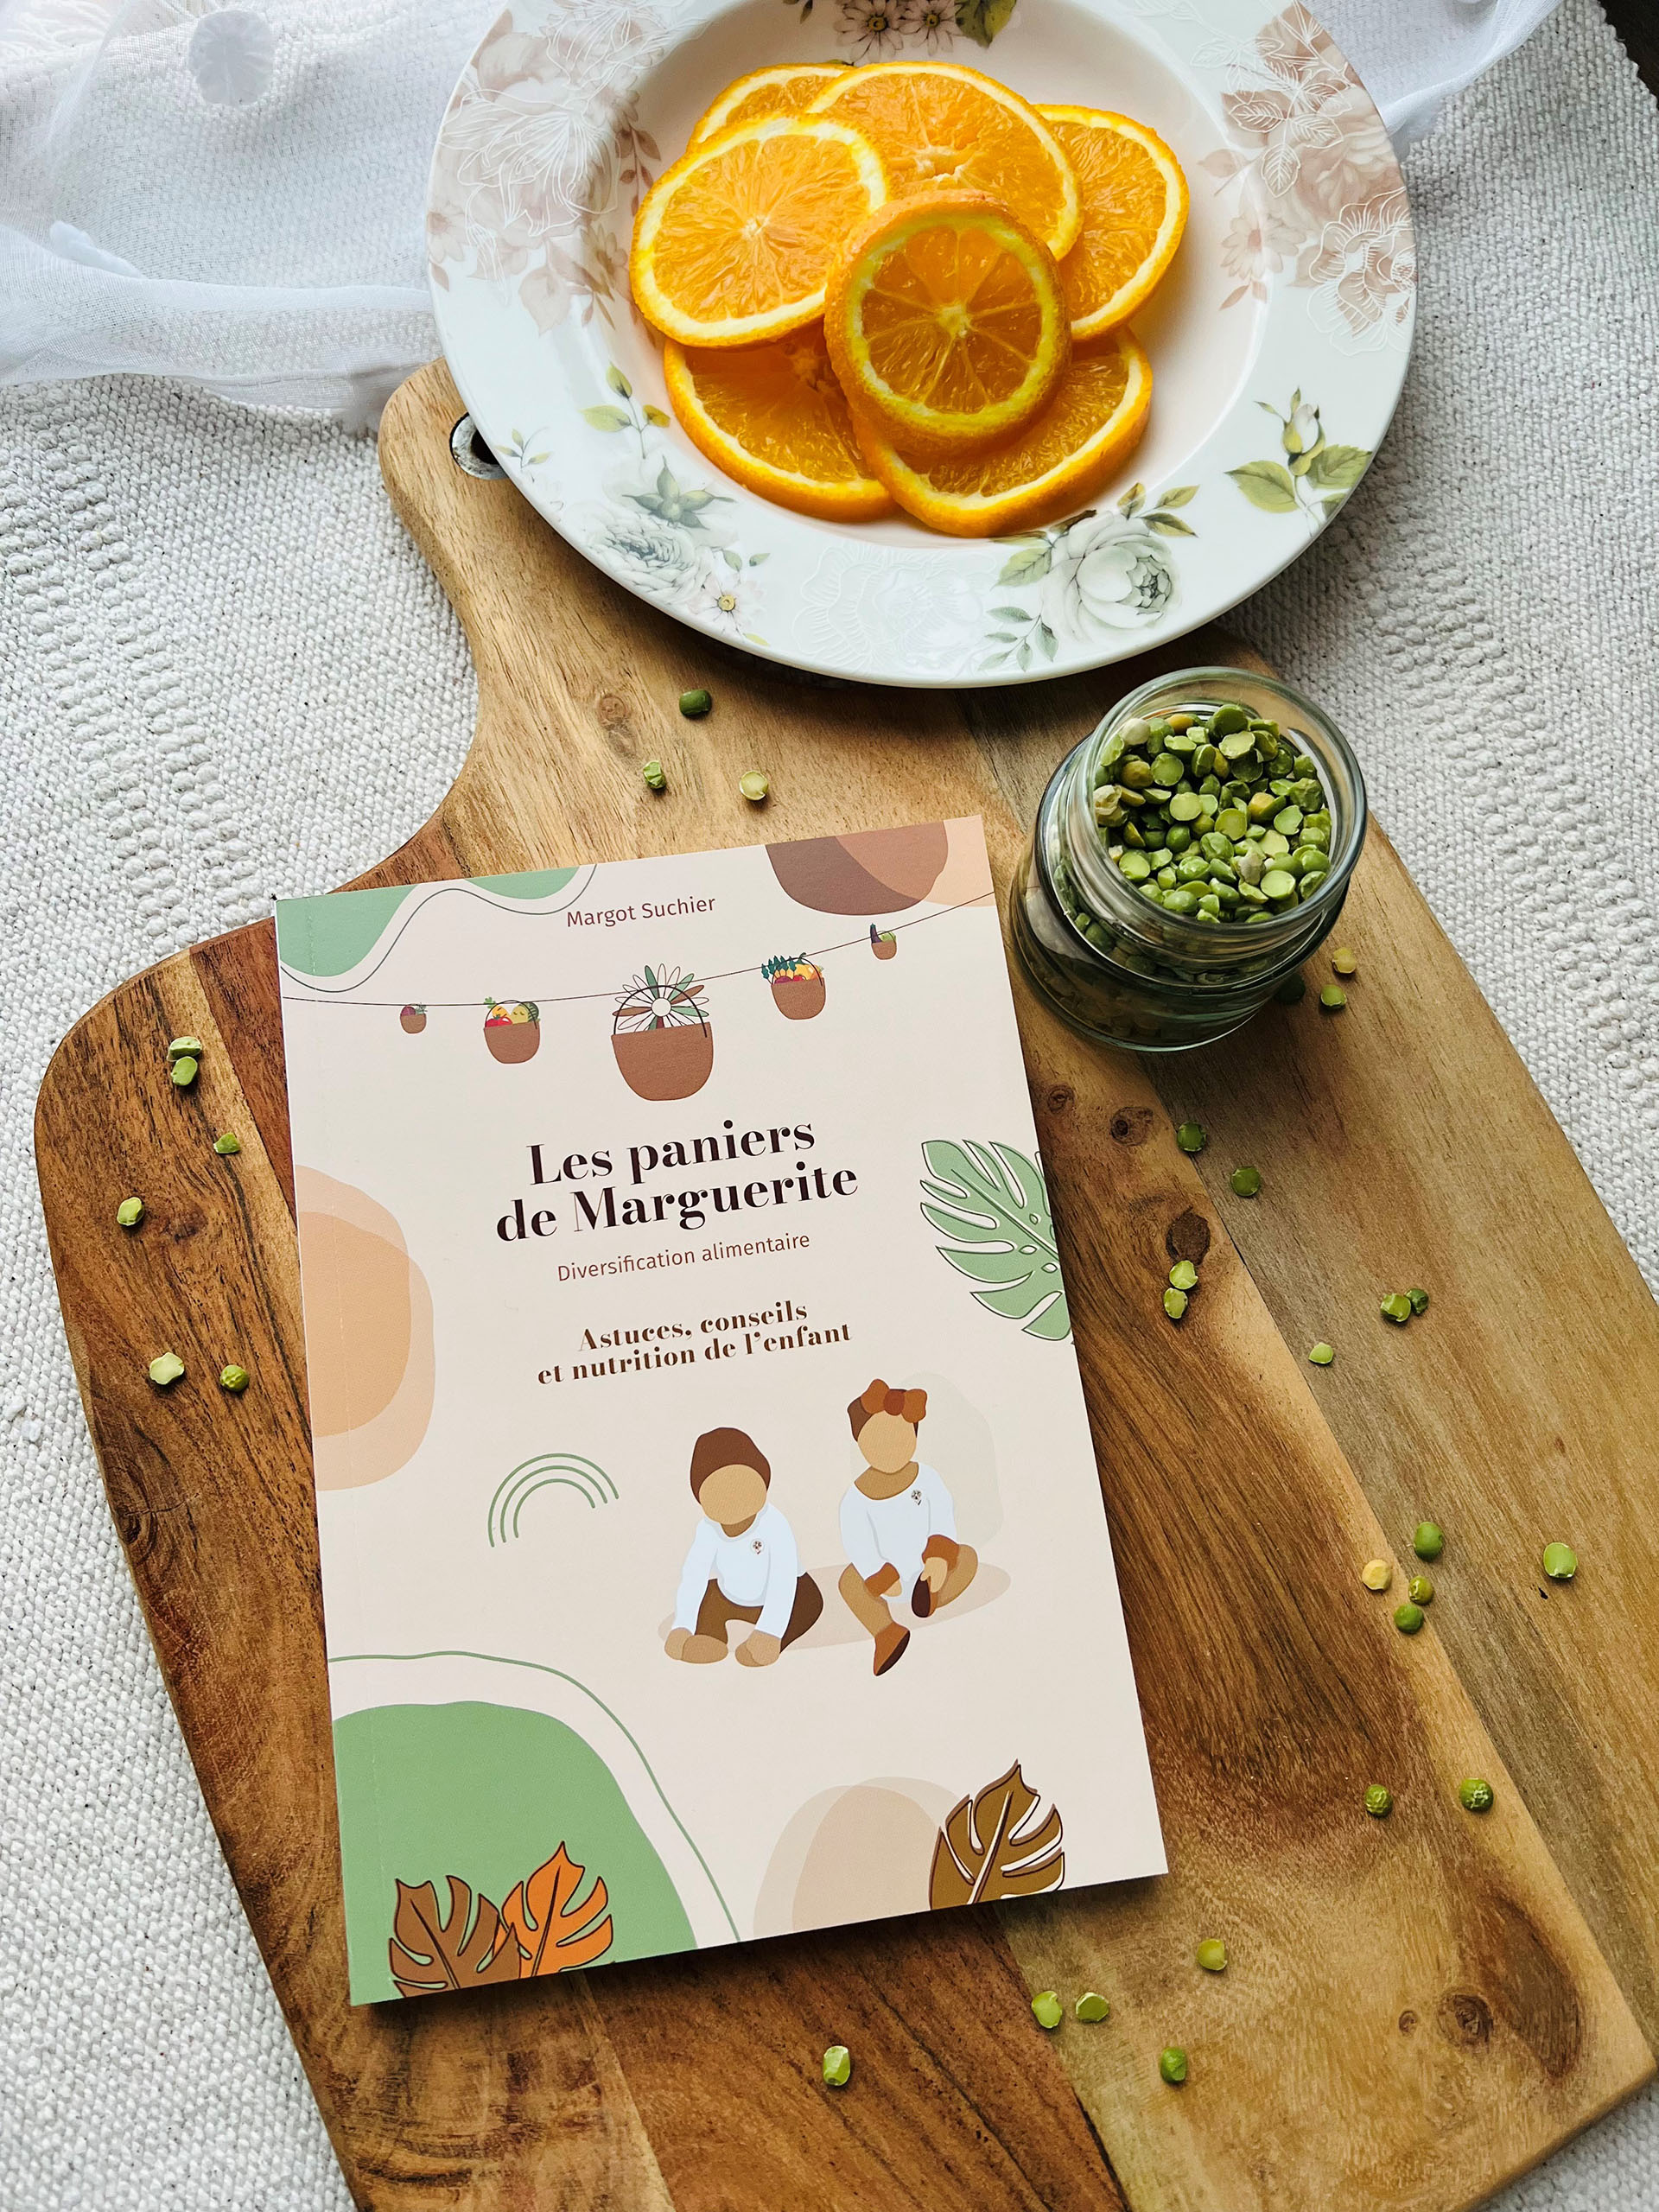 La diversification alimentaire (livre) - Marguerite